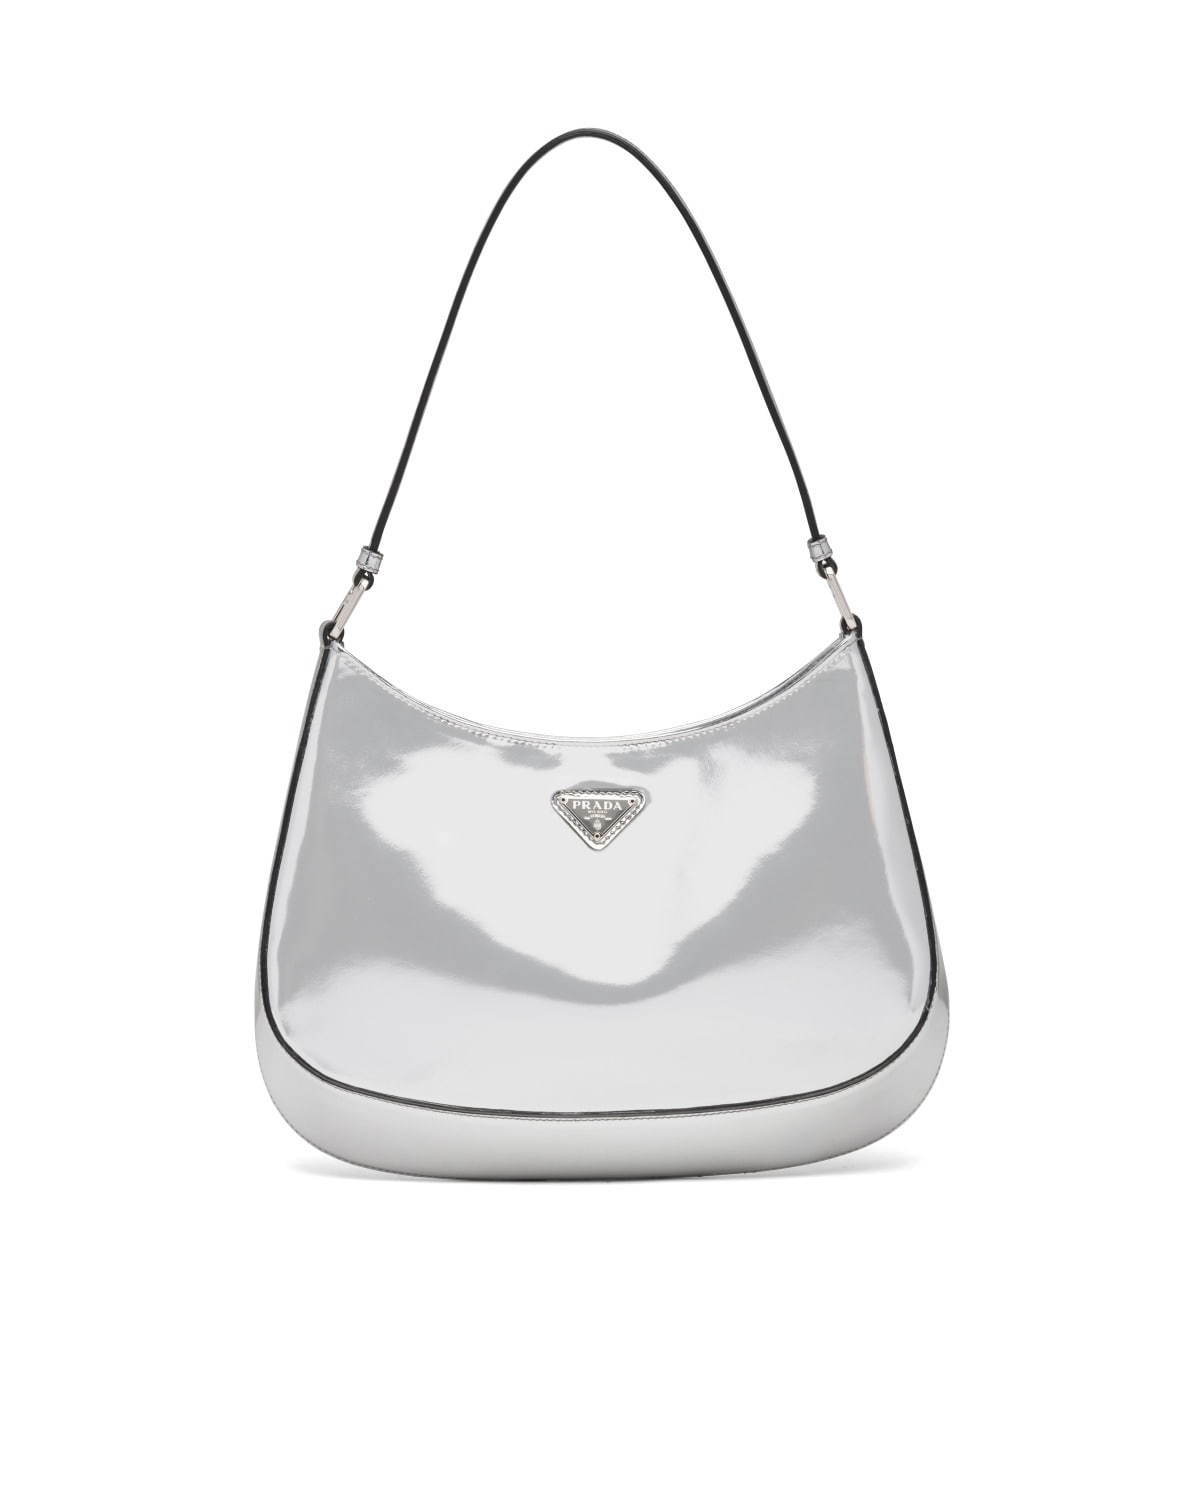 プラダの新作バッグ「プラダ クレオ」優雅なカーブを描くエナメル 